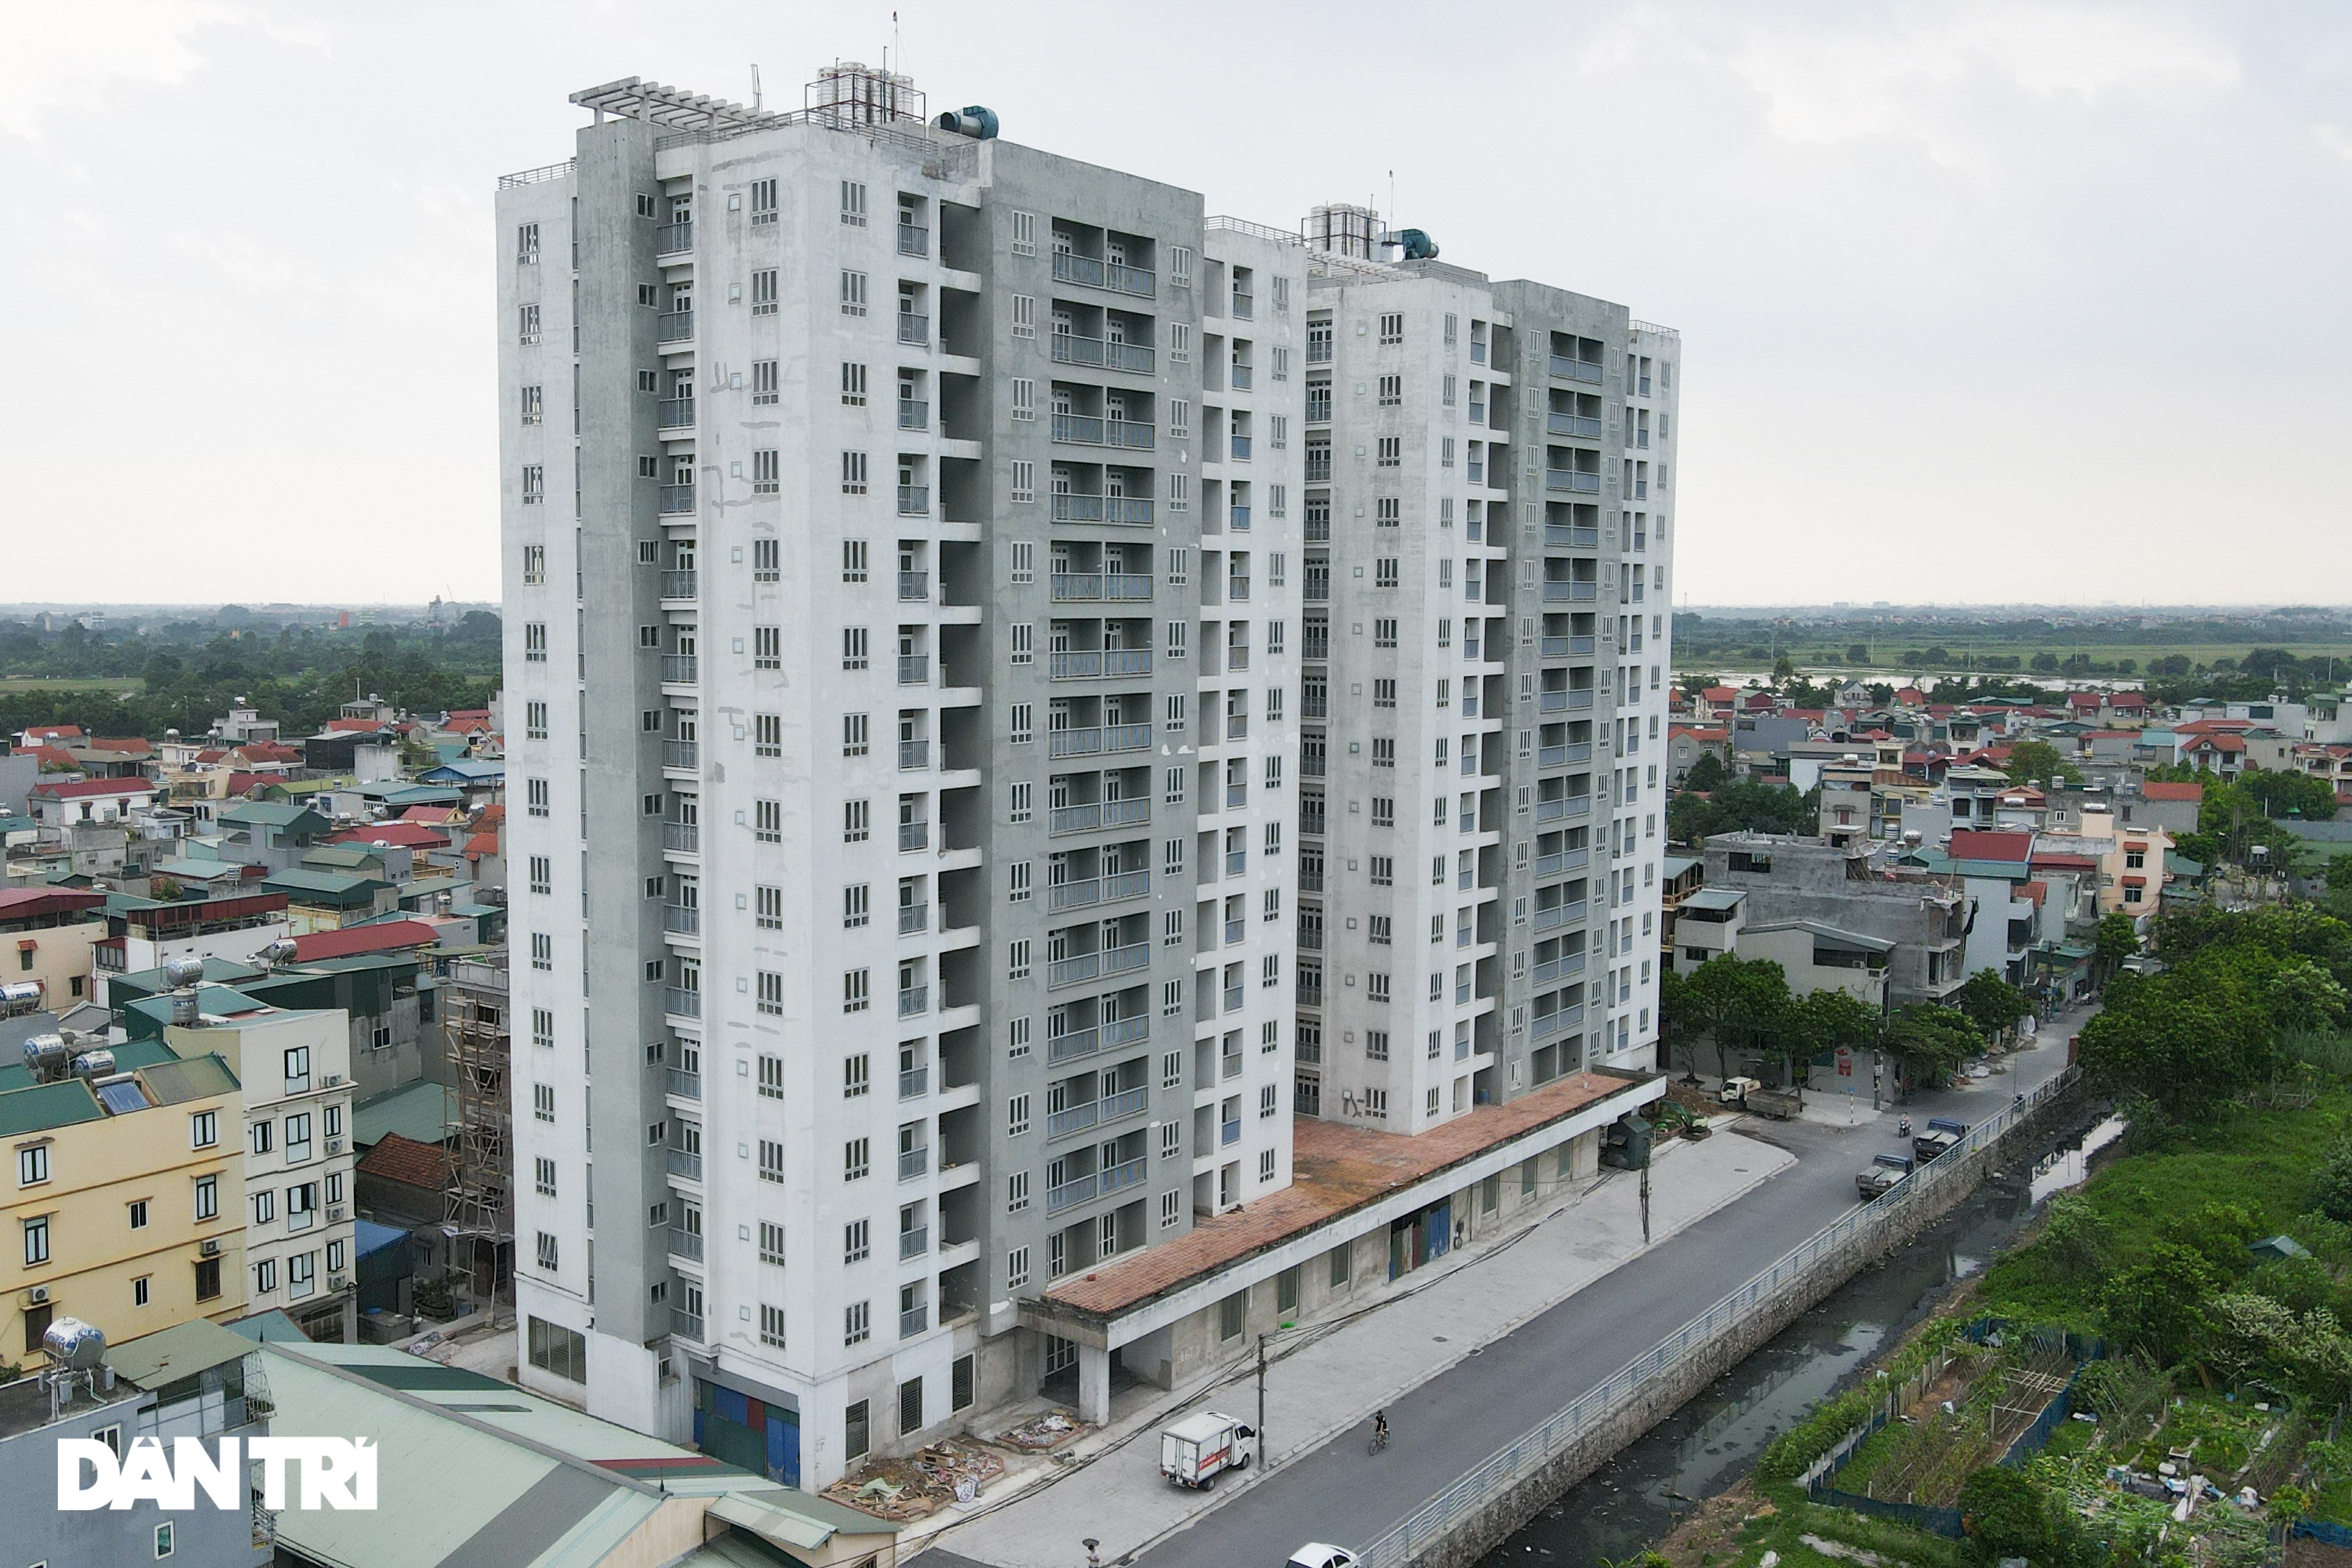 Xót xa hàng loạt khu chung cư cao tầng ở Hà Nội bị bỏ hoang nhiều năm - 10